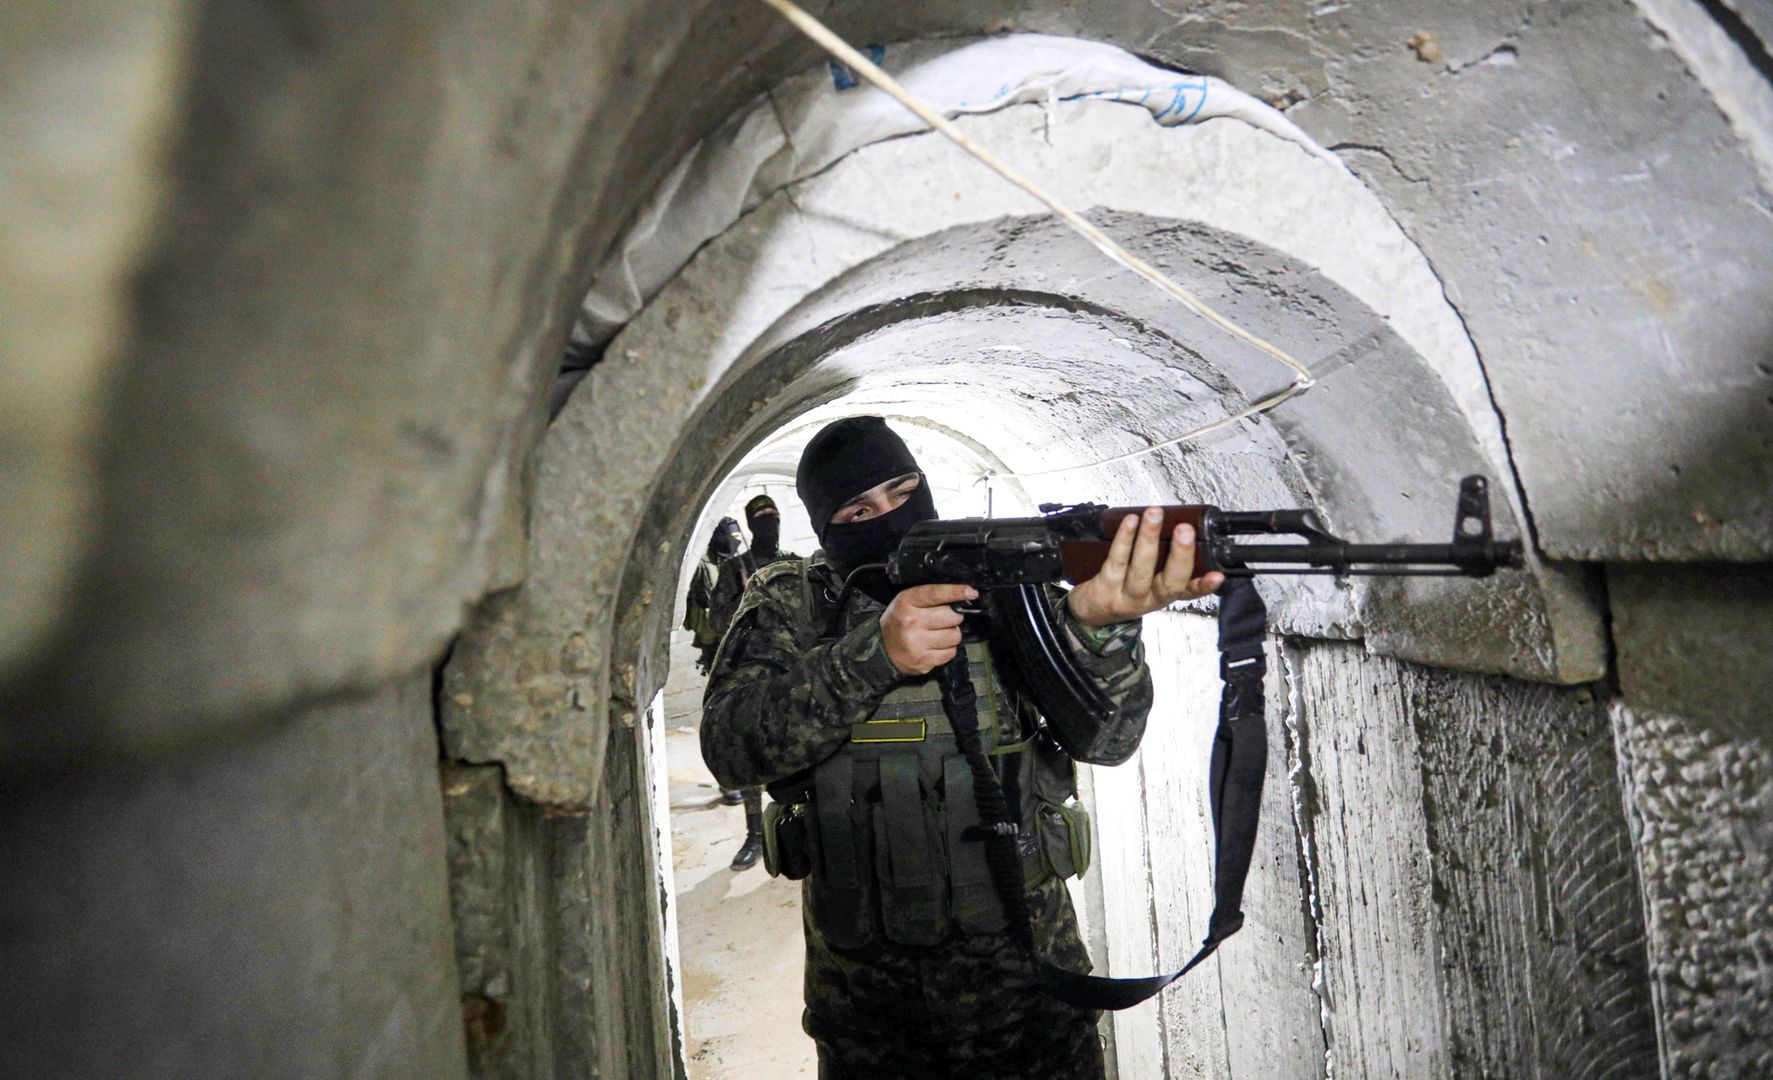 Zalane tunele Hamasu się zawalą? Geolog: Wszystko zależy od nadkładu